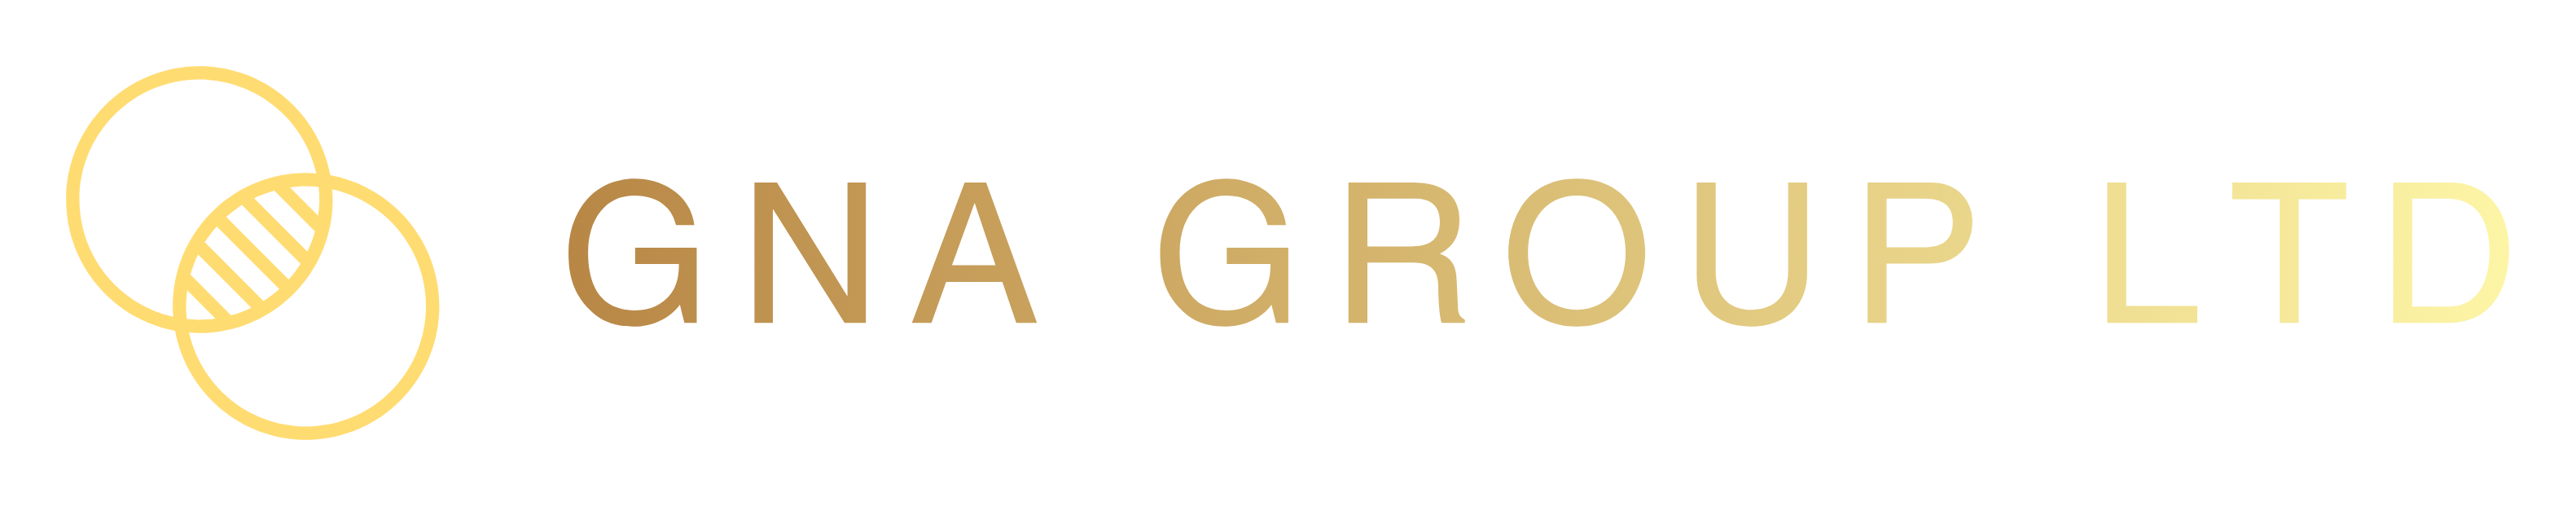 gna group logo